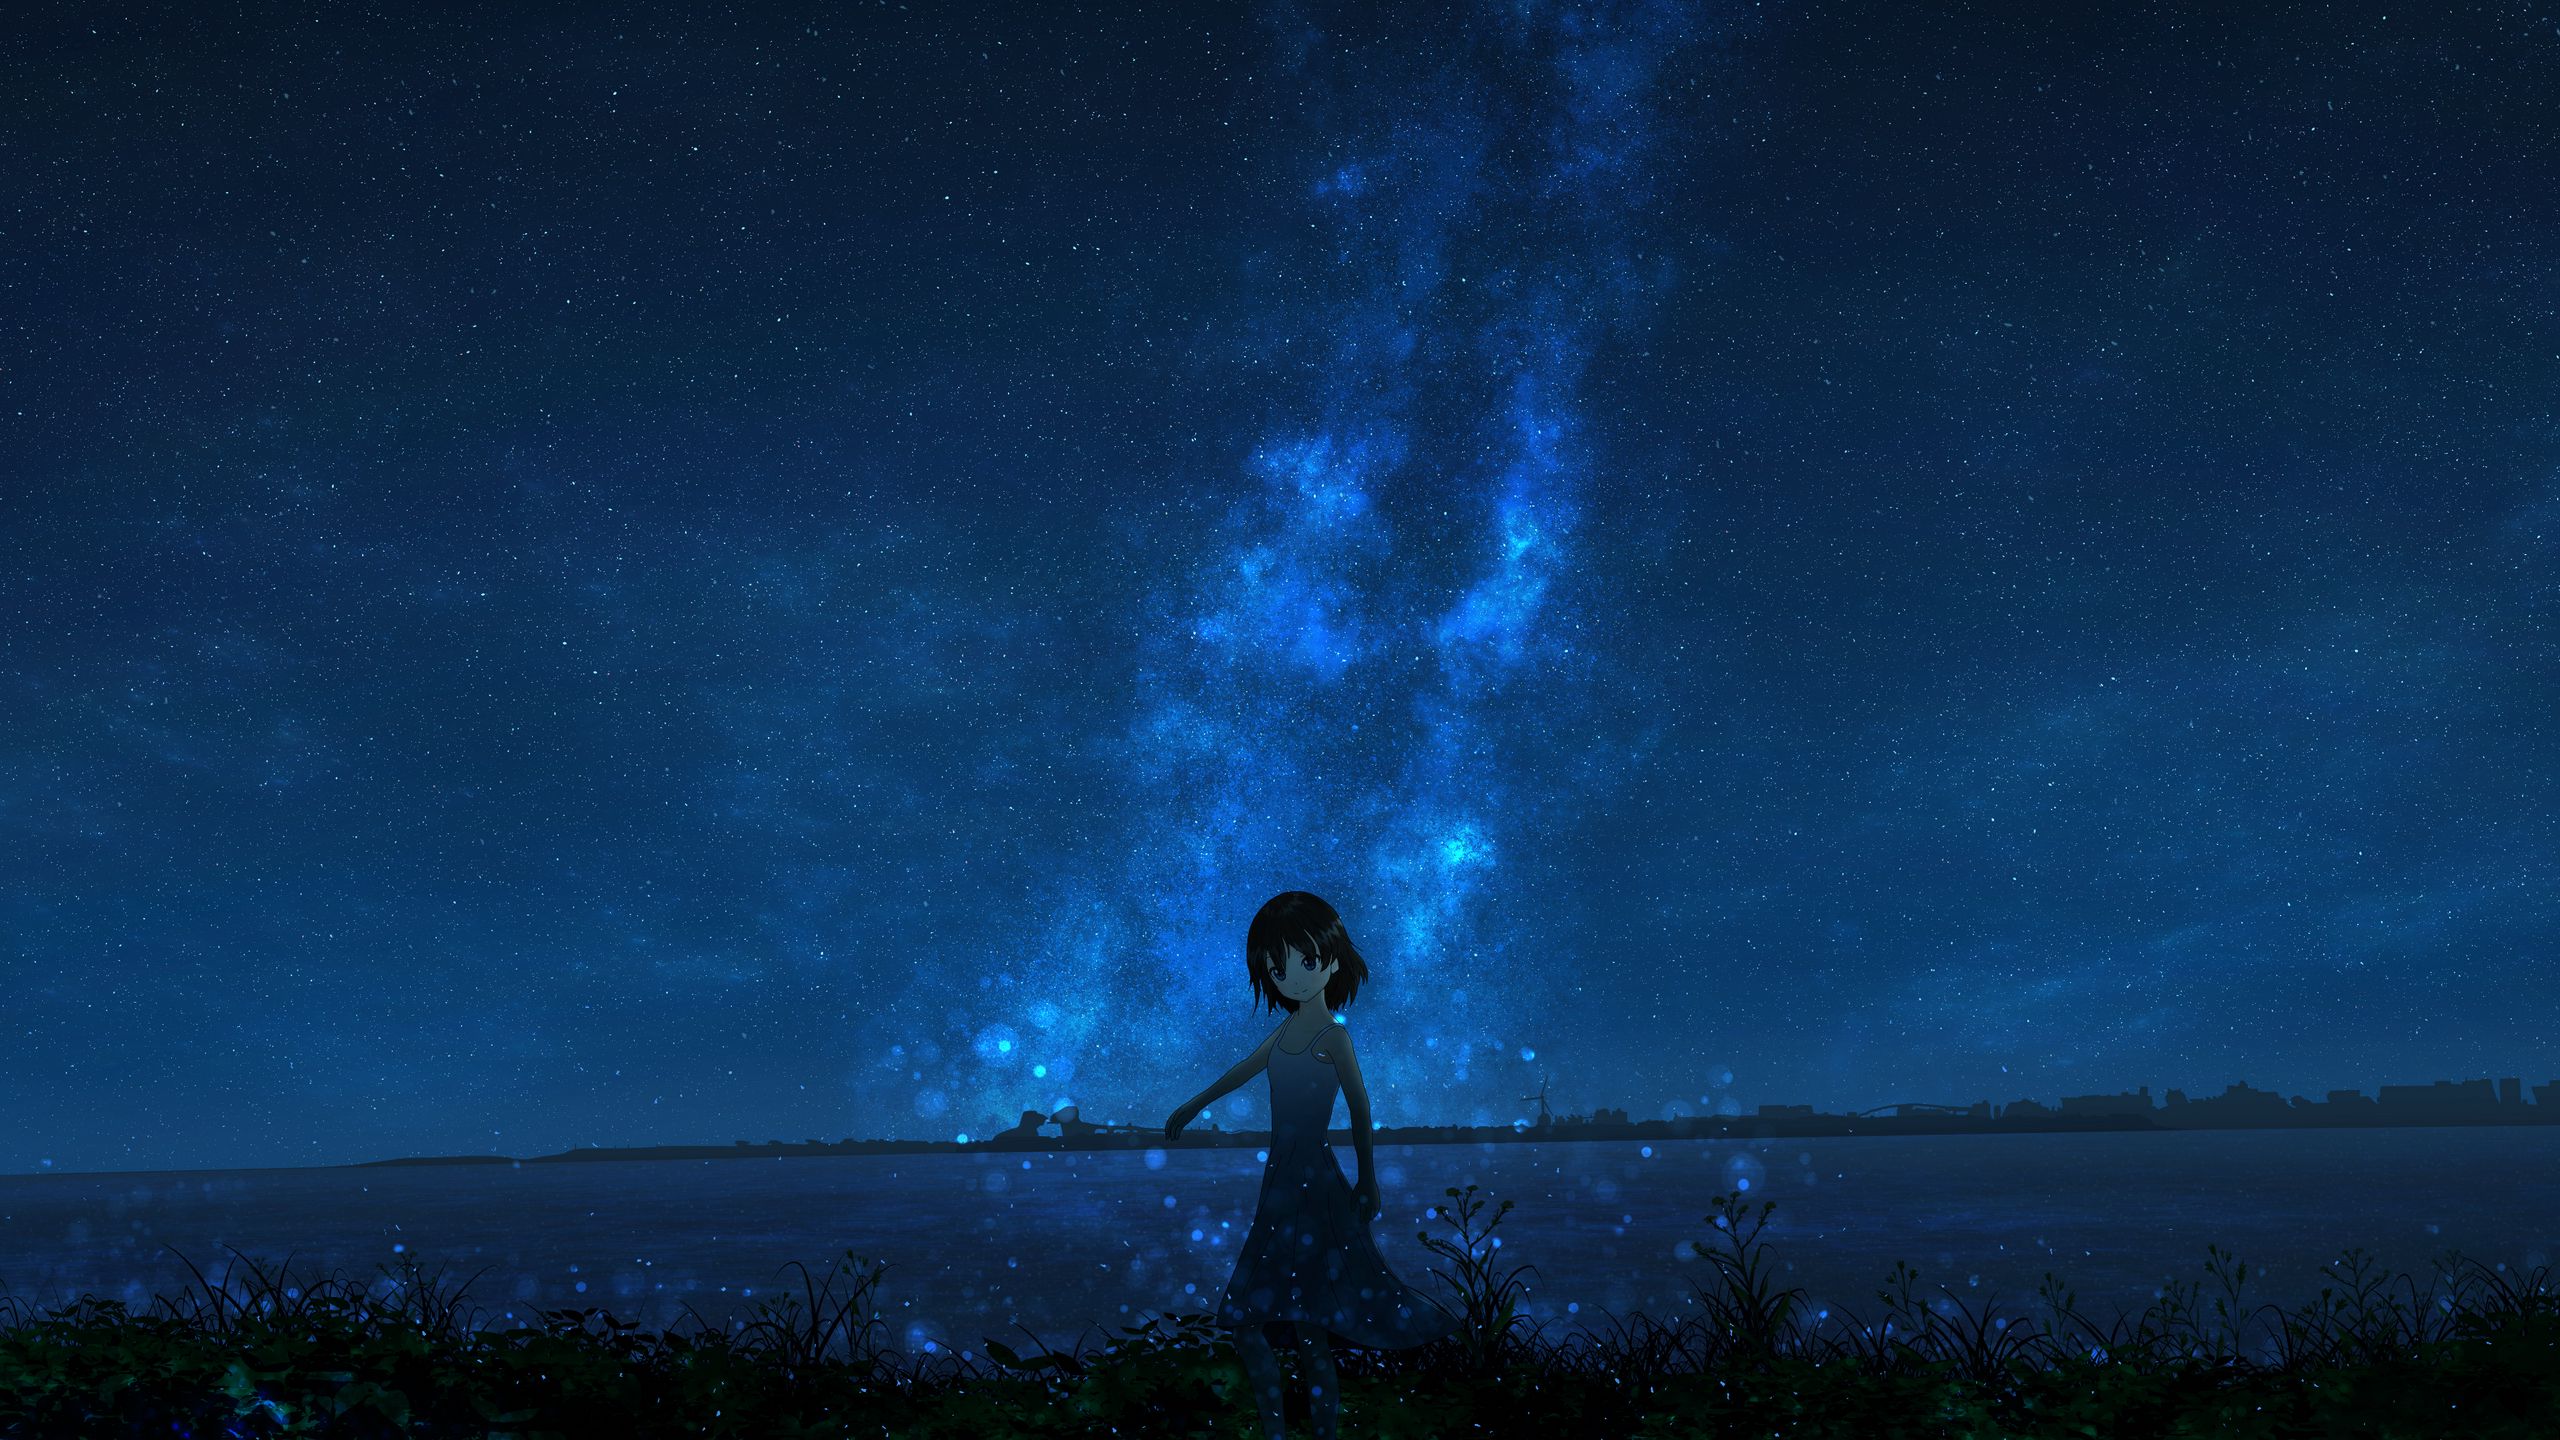 Cô gái đáng yêu đang lướt qua bầu trời đầy sao, tạo nên bức hình thật lung linh và đầy mơ mộng. Tình tiết trong anime cũng vô cùng đáng yêu và gợi cảm xúc.